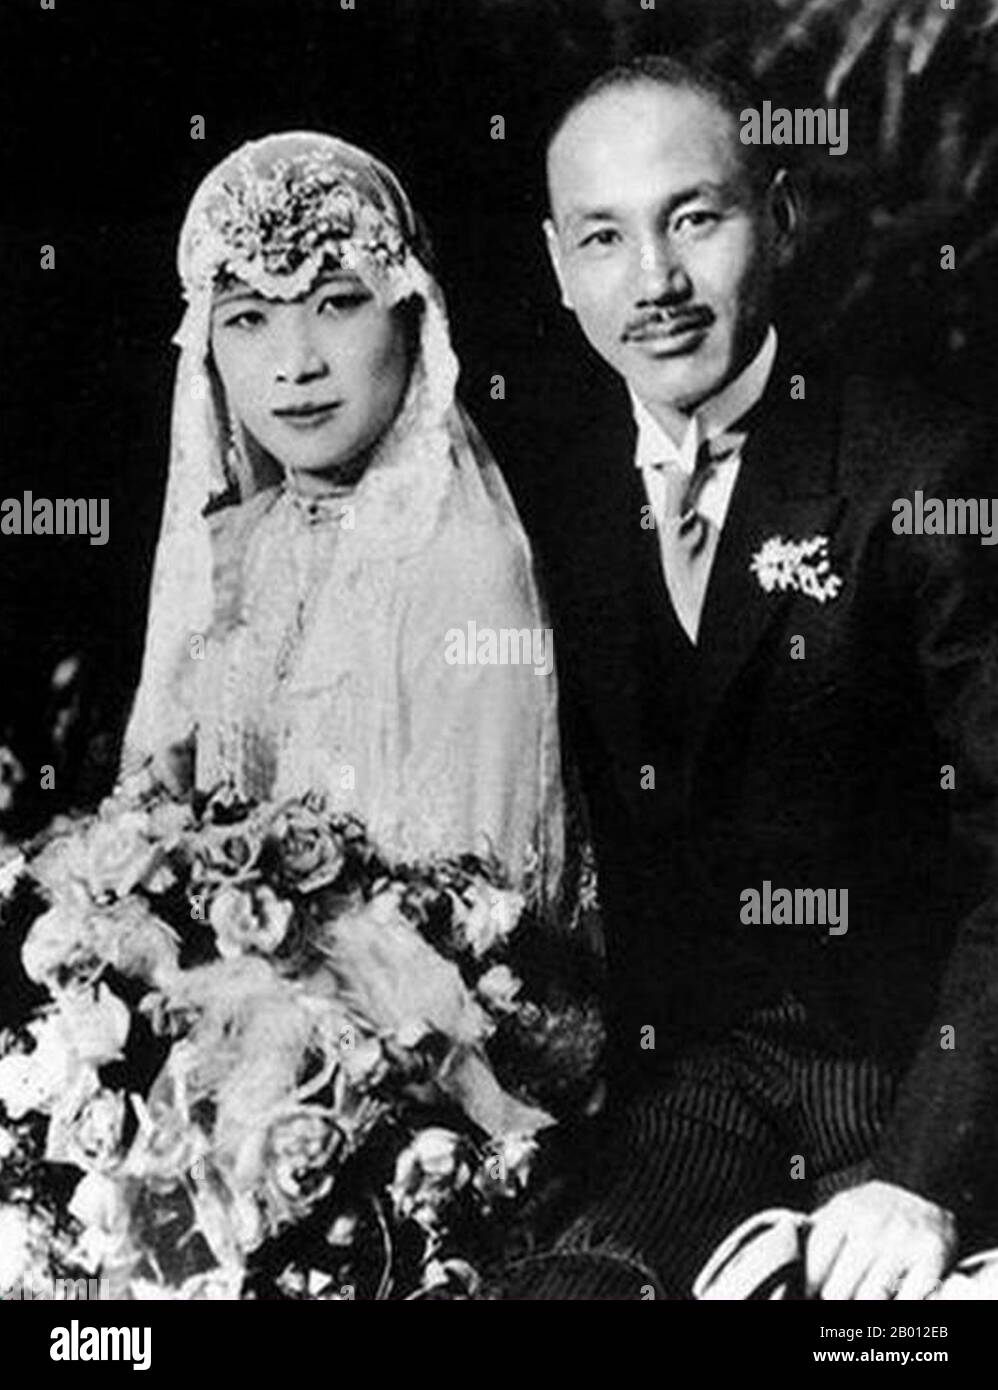 Cina/Taiwan: Soong May-ling (Song Meiling, 1898-2003), in occasione del suo matrimonio con Chiang Kai-shek, Shanghai, 1 dicembre 1927. Soong May-ling o Mei-ling, conosciuto anche come Madame Chiang Kai-shek (Song Meiling, 1898-2003), First Lady of the Republic of China (ROC) e moglie del presidente Chiang Kai-shek. Era una politico e una pittrice. La più giovane e l'ultima sopravvissuta delle tre suore Soong, ha svolto un ruolo di primo piano nella politica della Repubblica di Cina ed è stata la sorella di Song Qingling, moglie del presidente Sun Yat-sen, il fondatore della Repubblica cinese (1912). Foto Stock